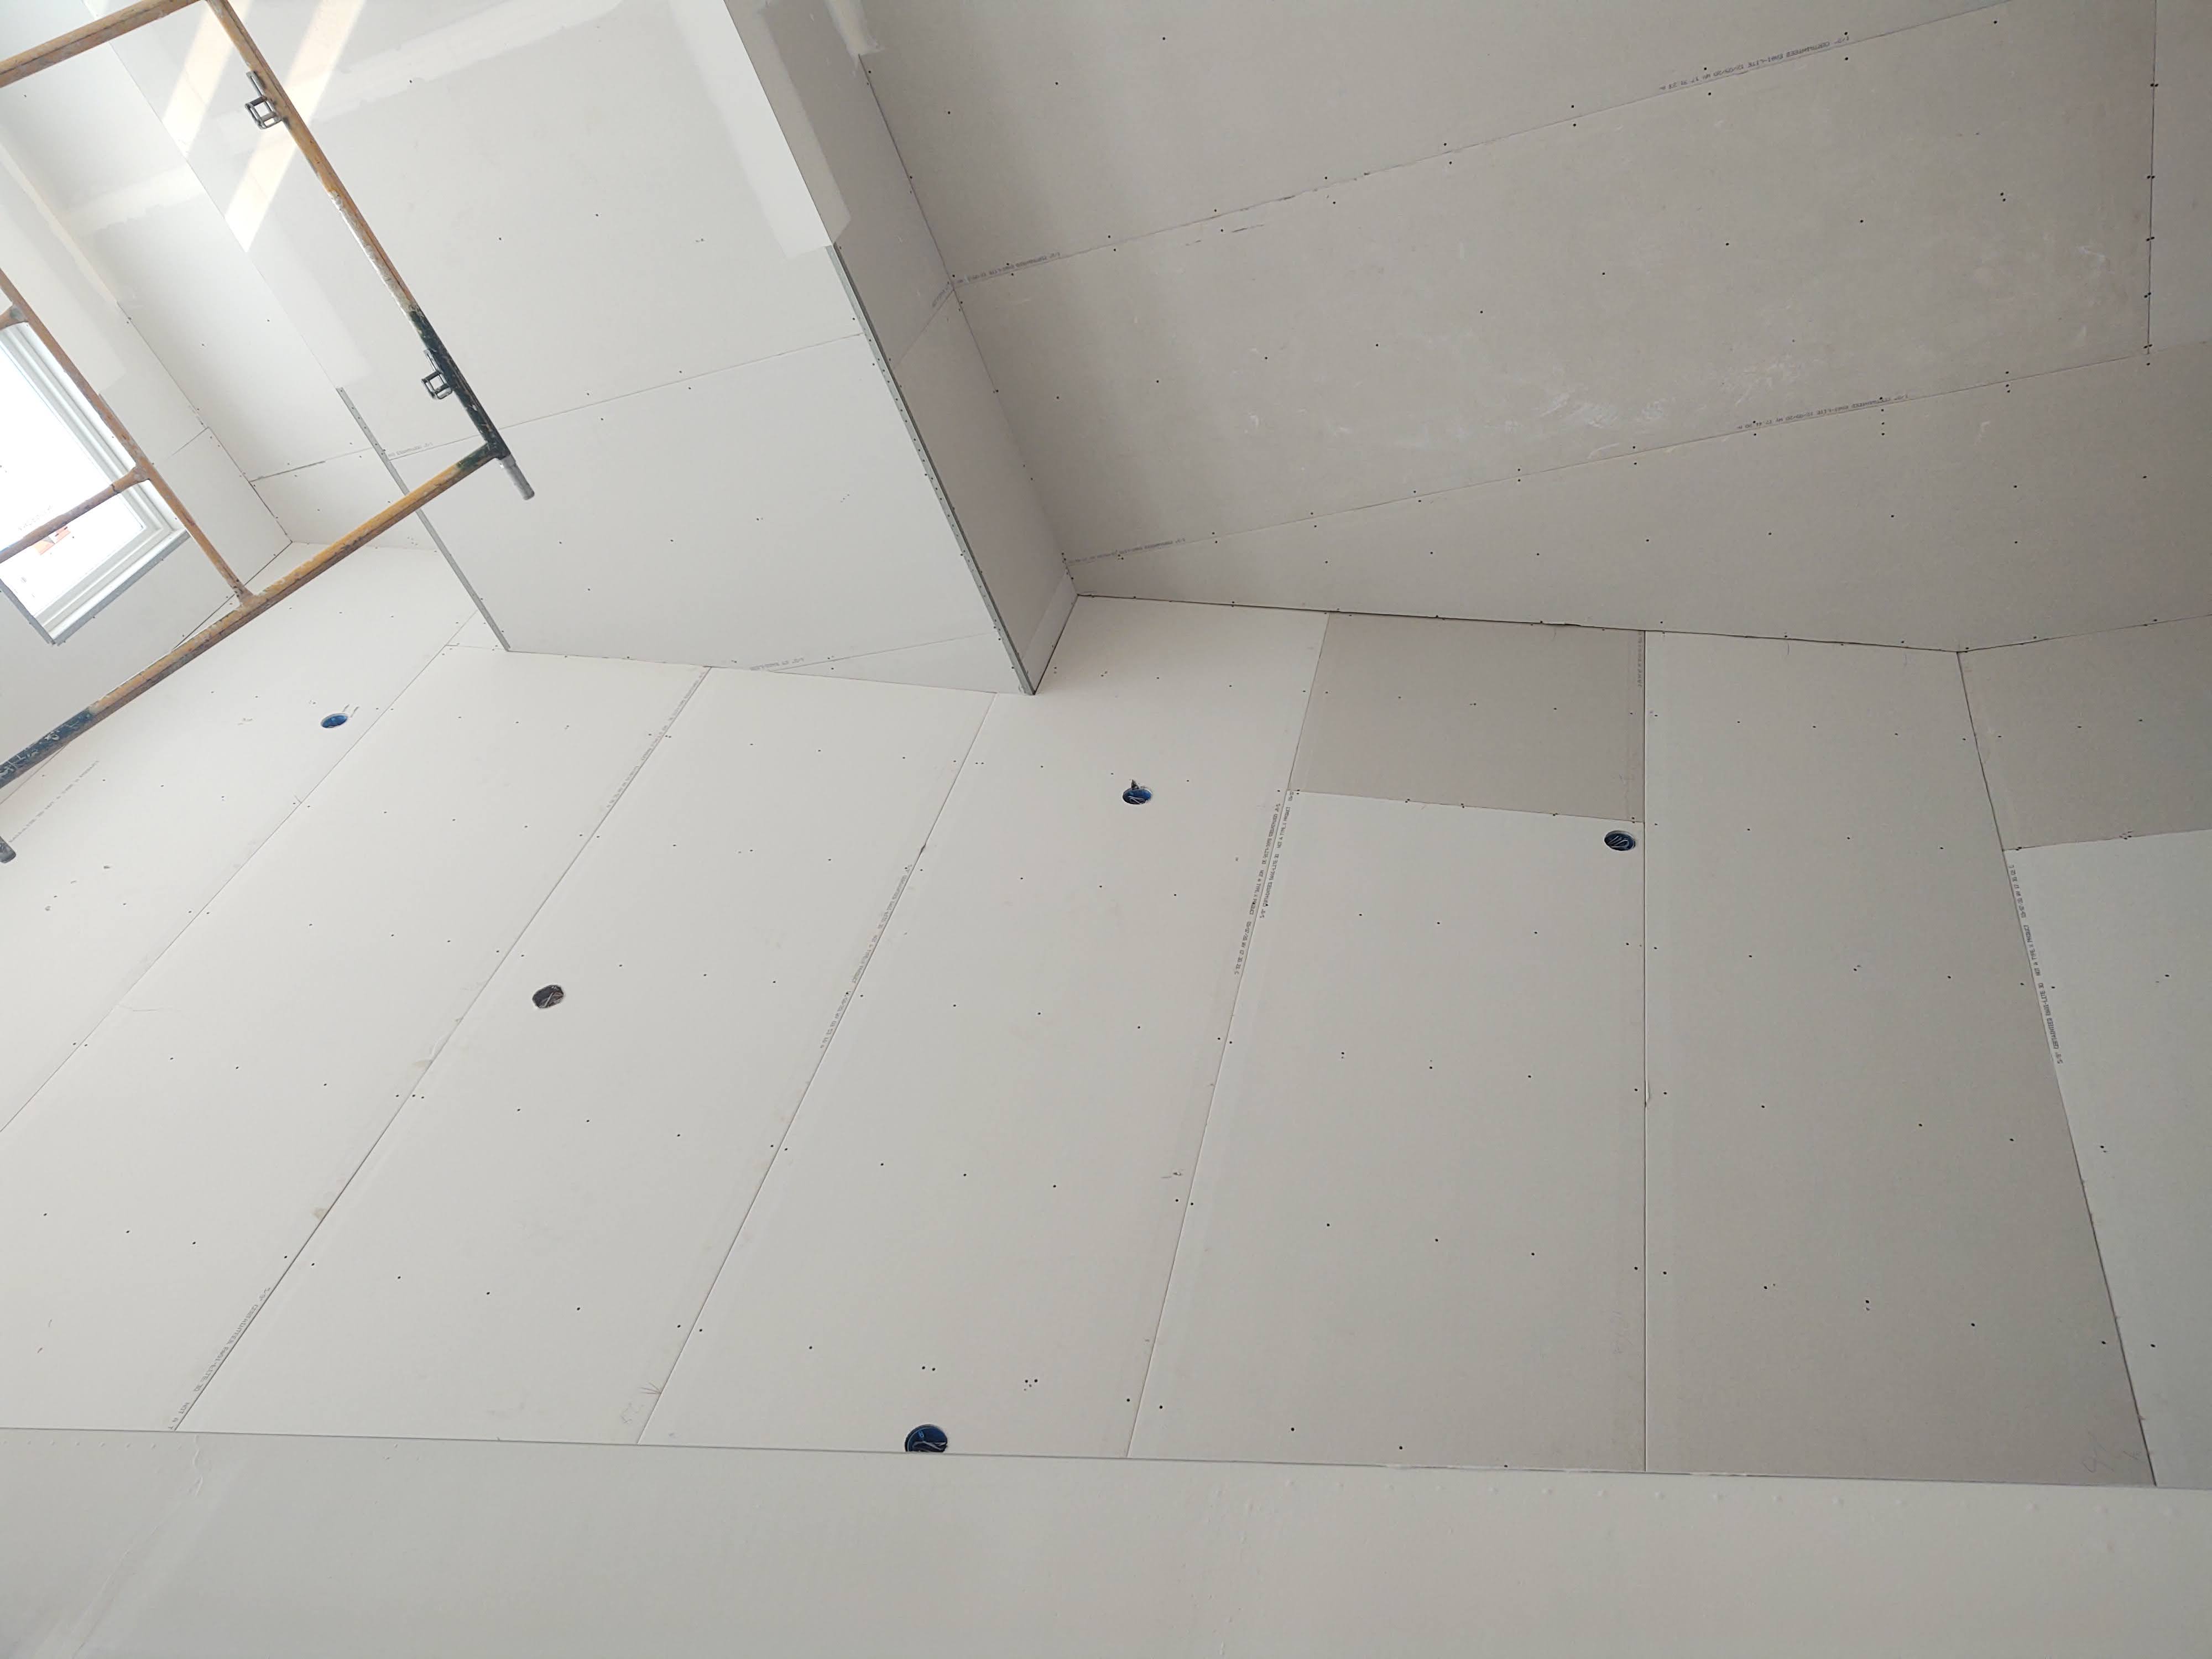 Ceiling Drywall Instal2lation & Repair.jpg